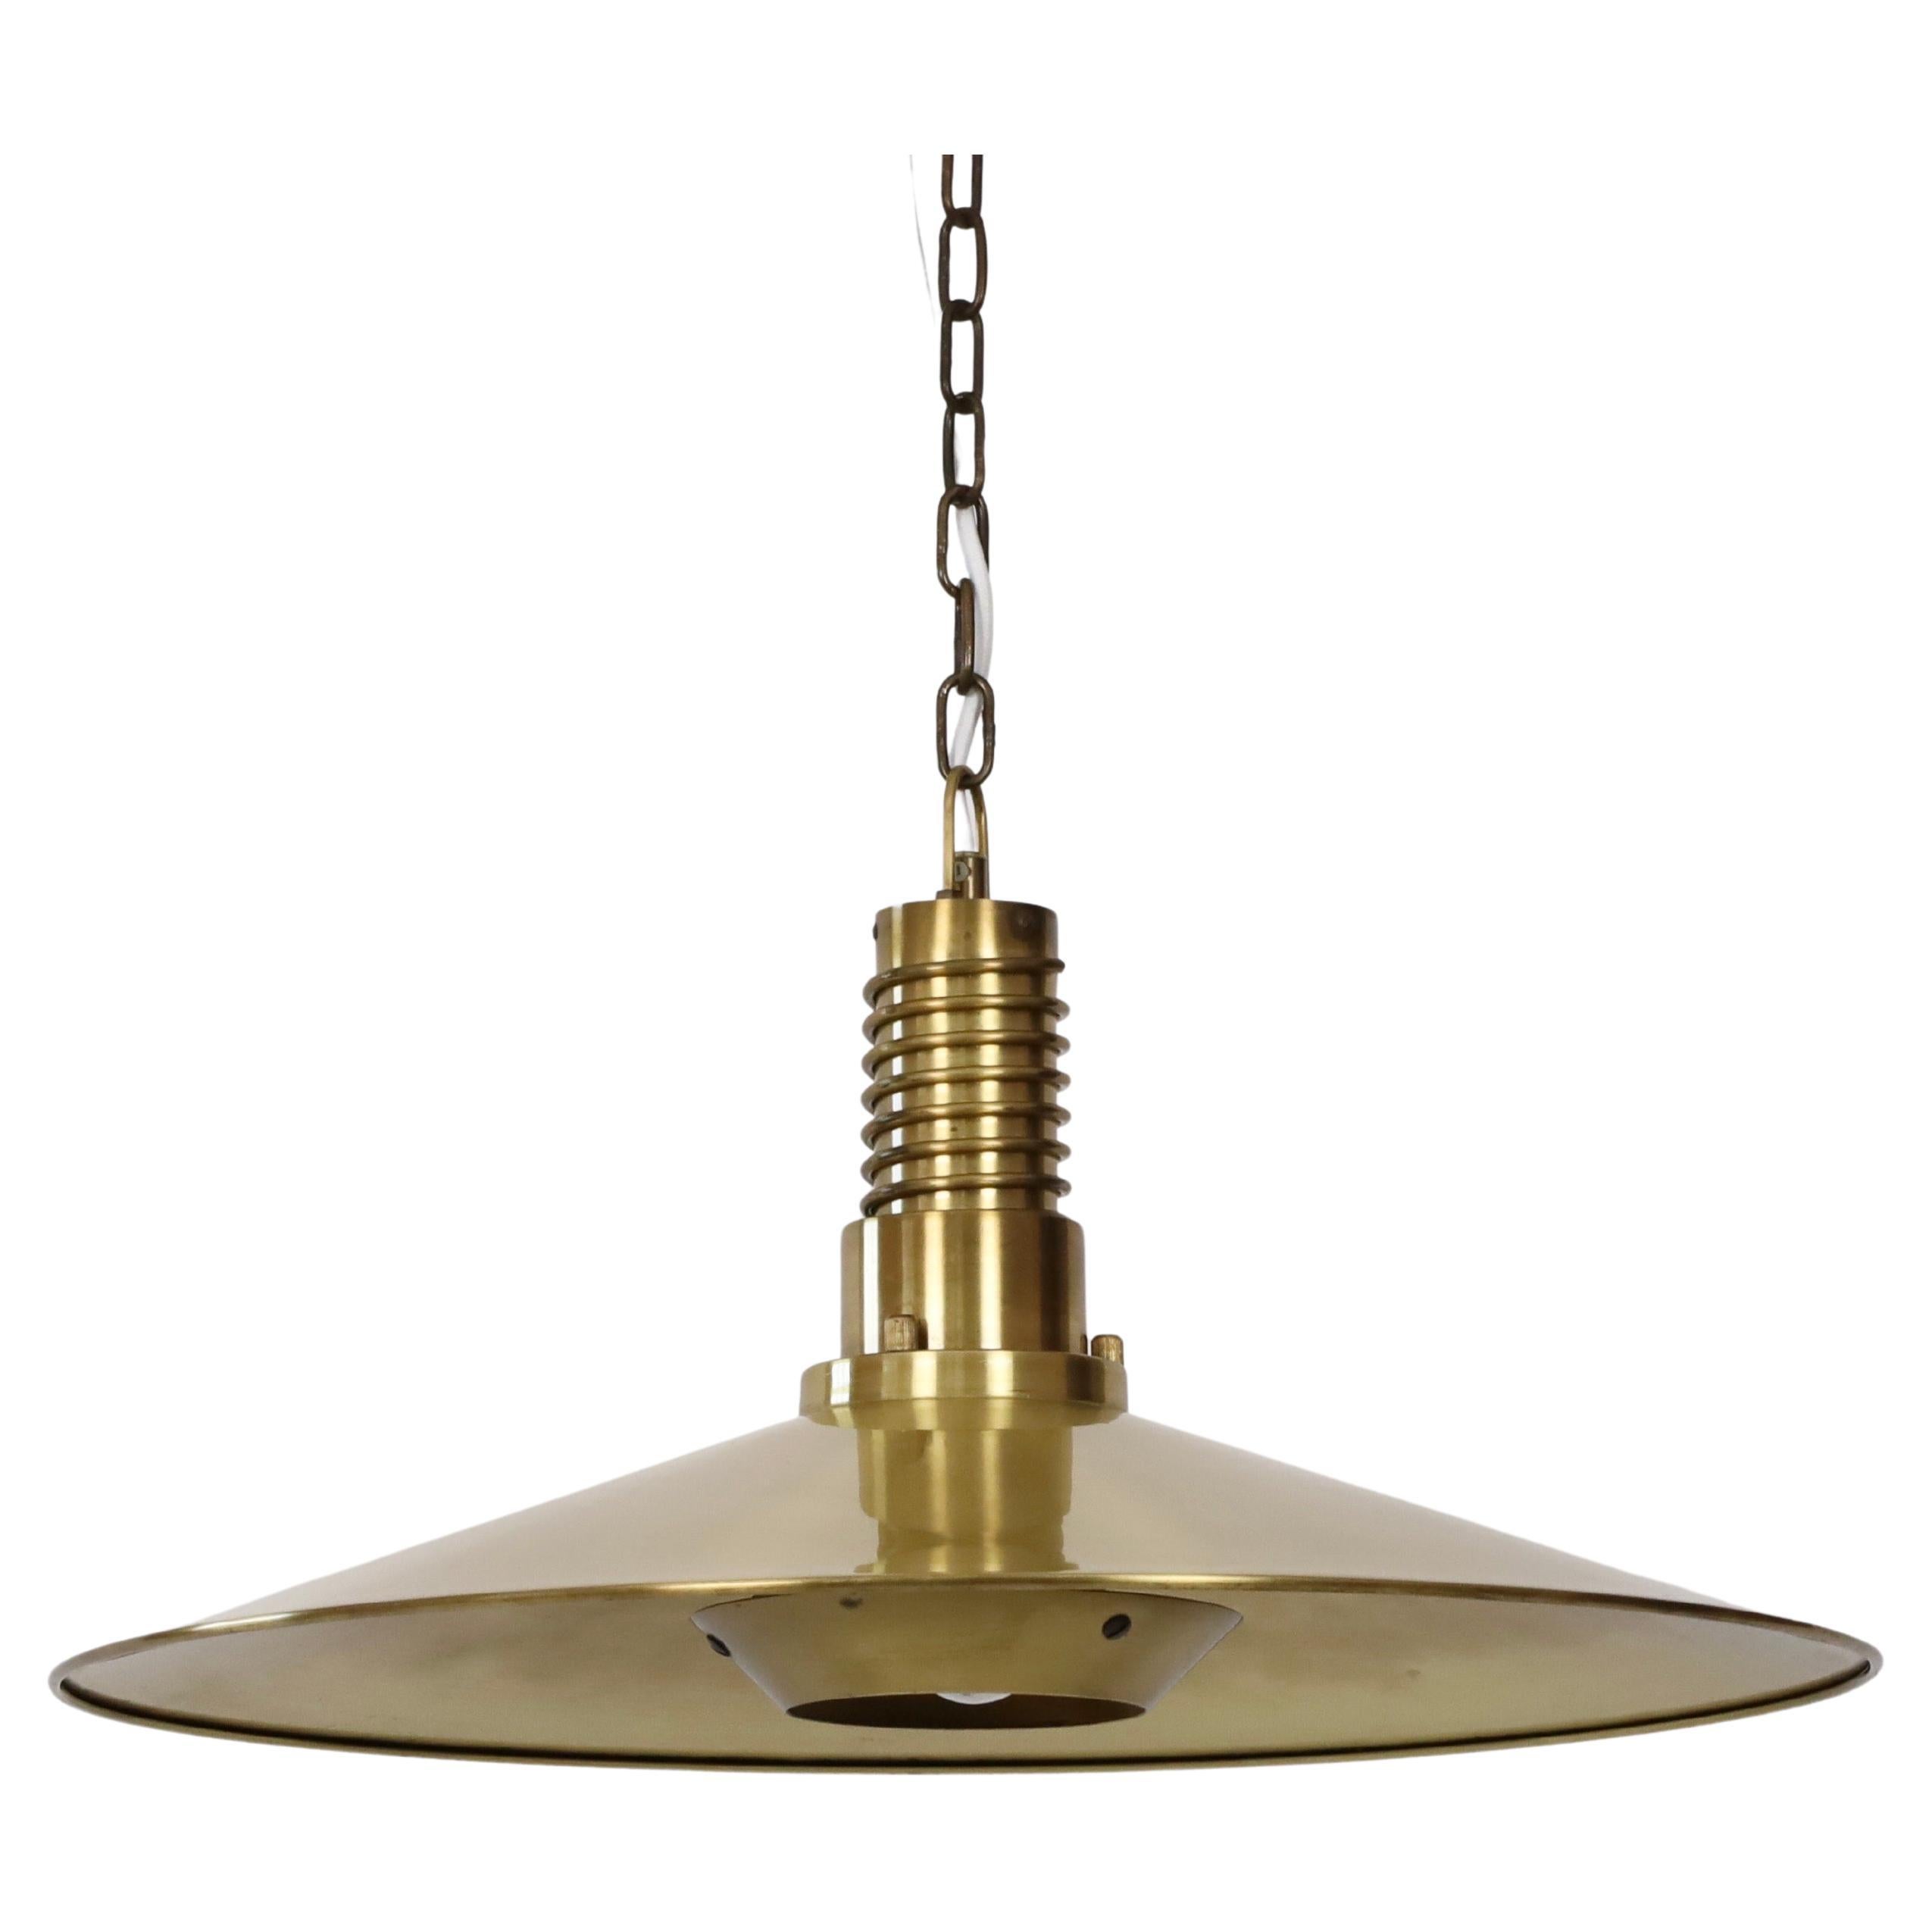 Mid-20th Century Substantial Danish Modern Brass Pendant Light by Fog & Morup, 1960s, Denmark For Sale